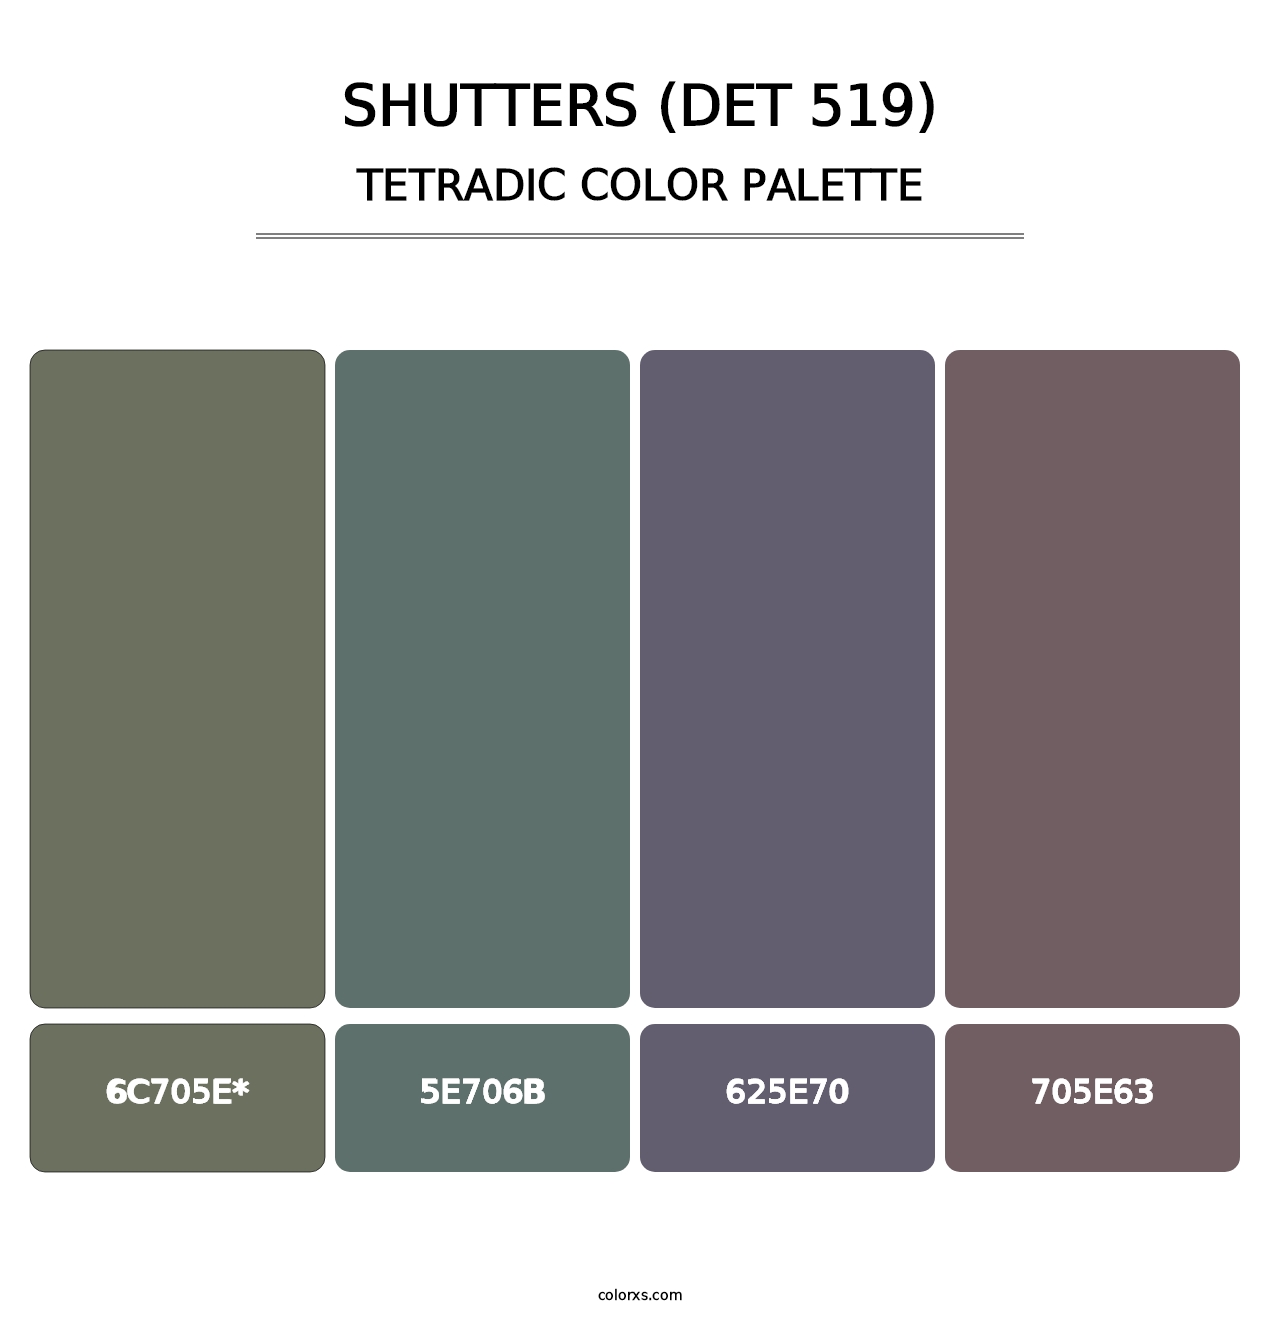 Shutters (DET 519) - Tetradic Color Palette